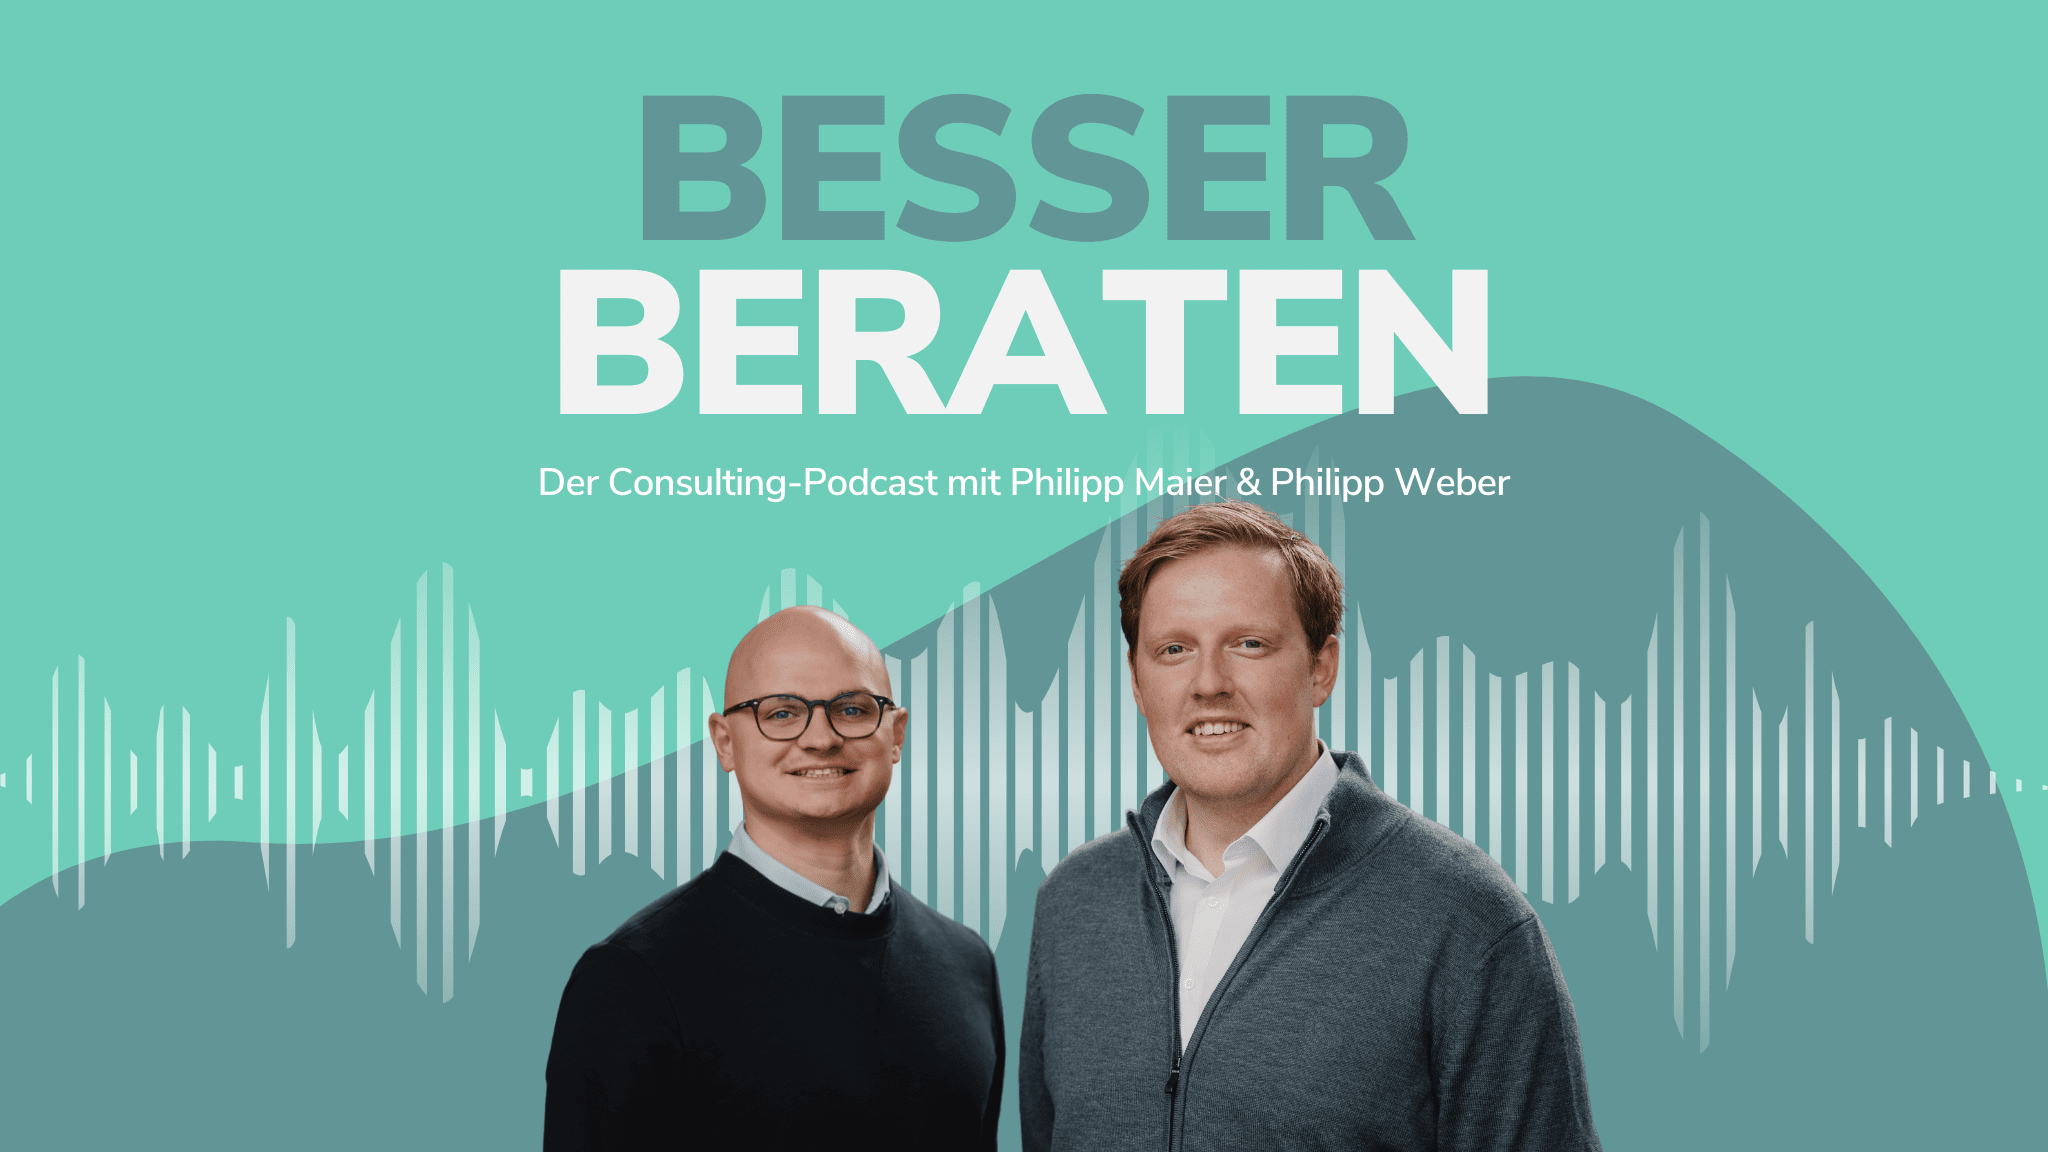 Von Der Consulting-Podcast mit Philipp Maier und Philipp Weber